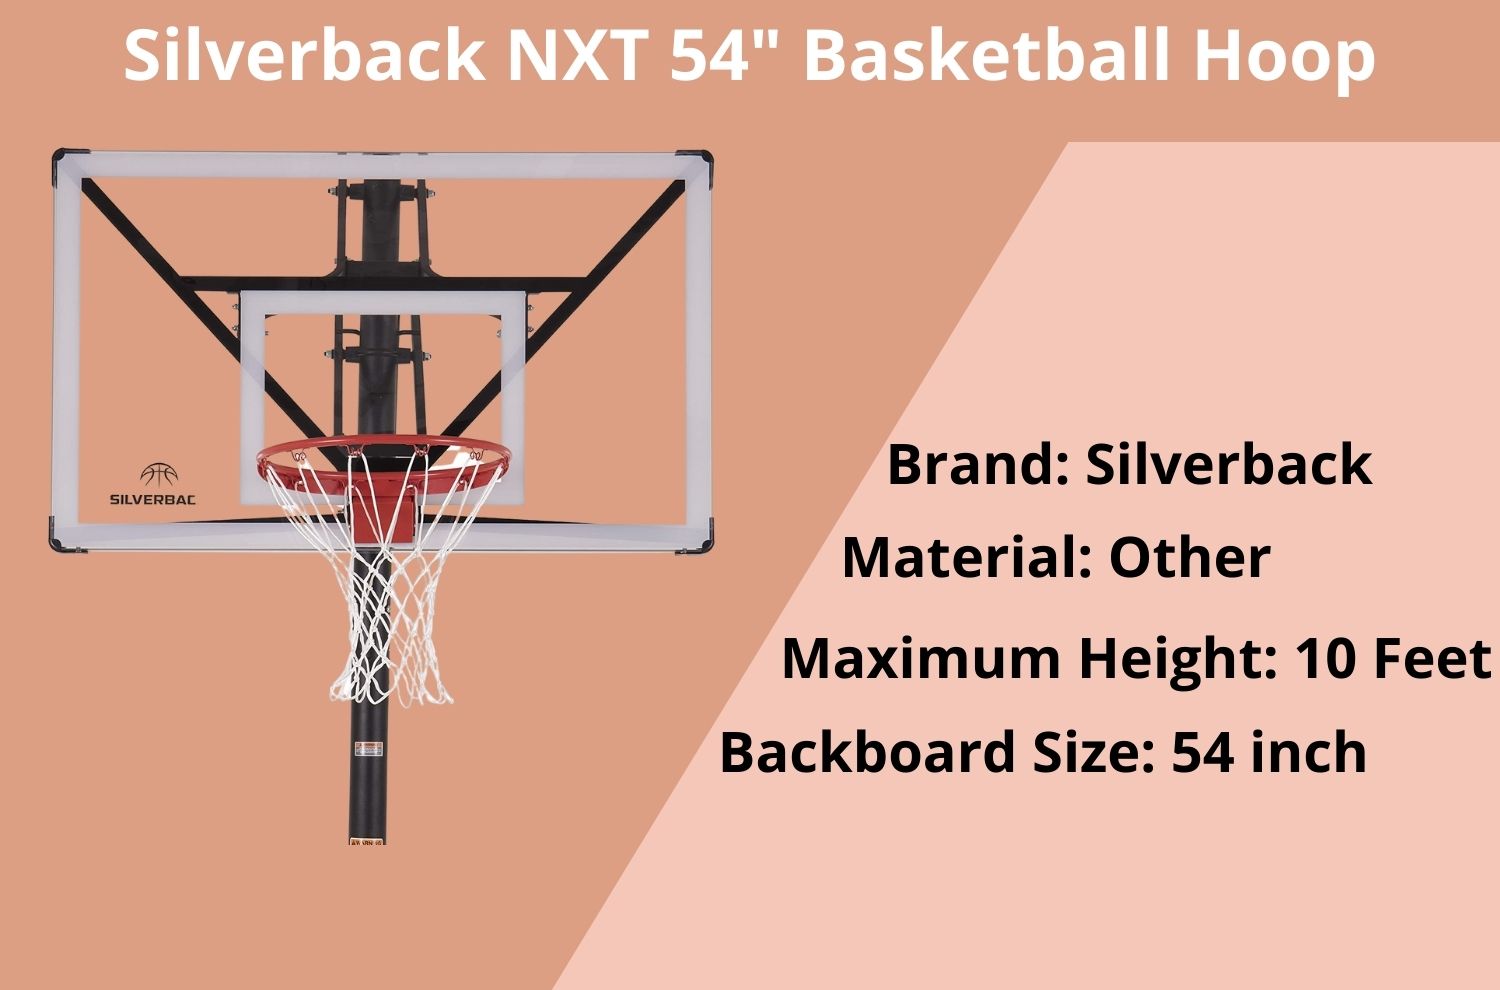 best inground basketball hoop under 500